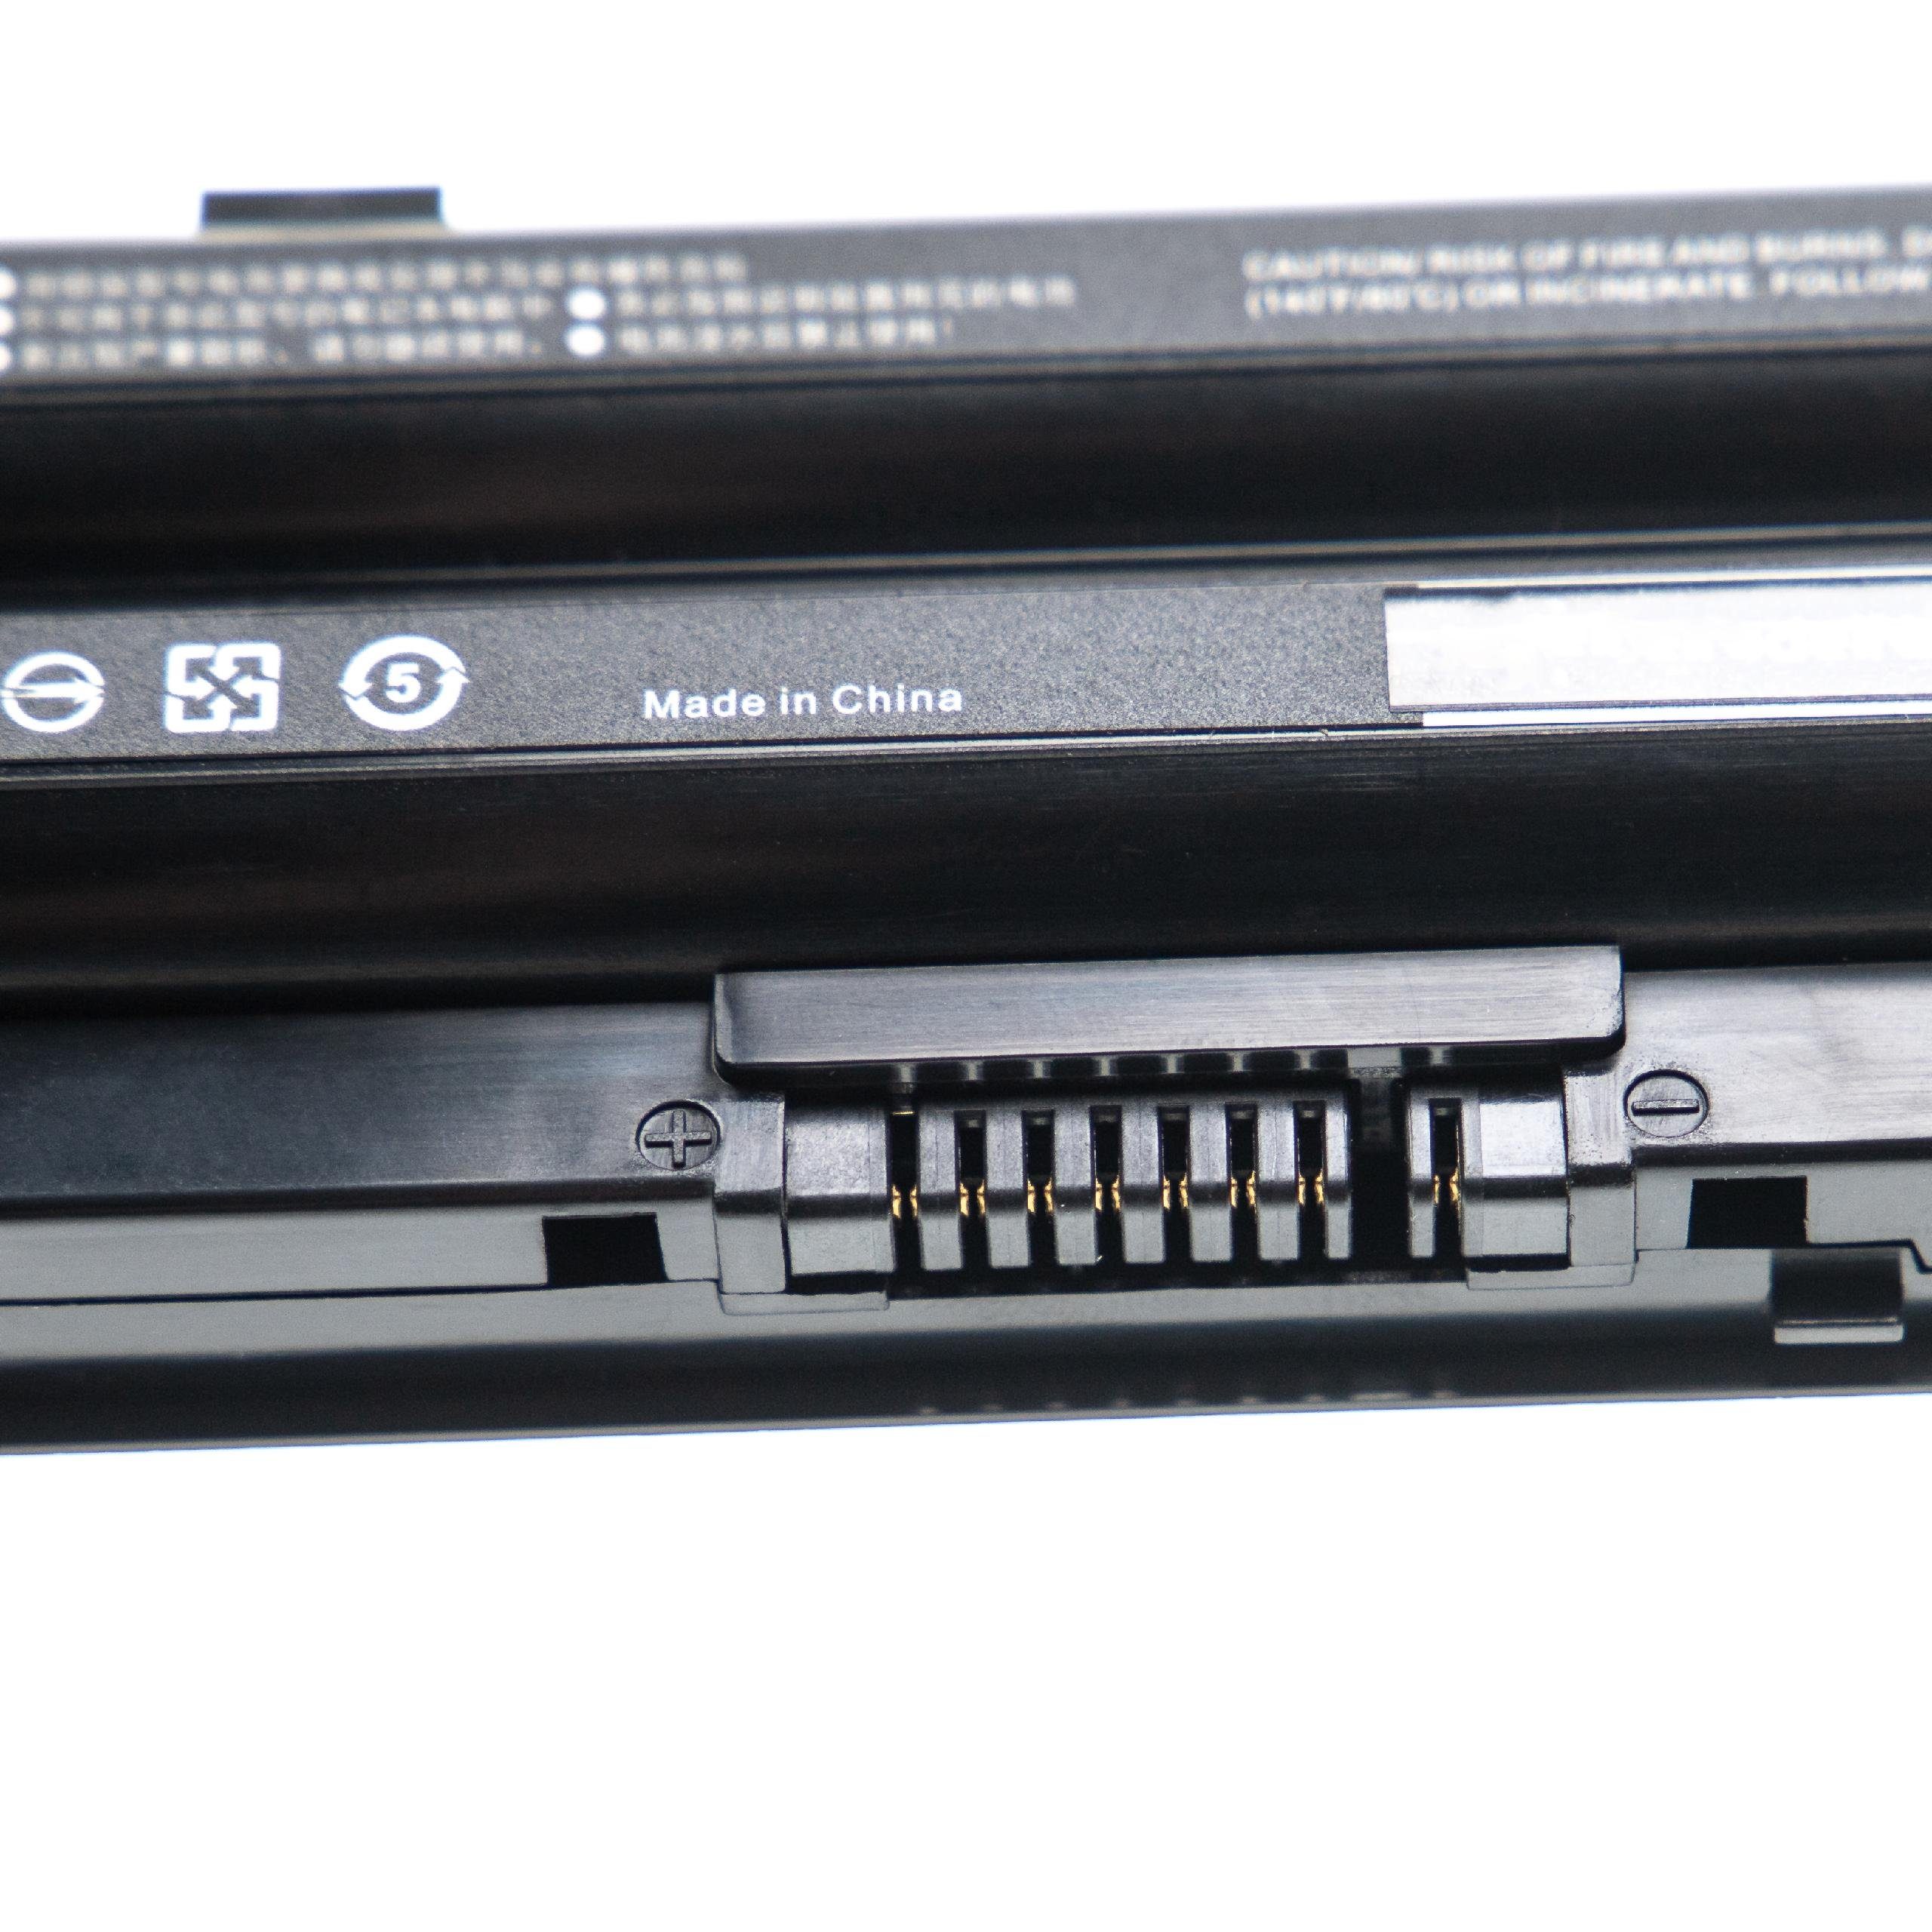 4400 mAh E743(MXE11DE), Fujitsu vhbw LifeBook passend E743(M55A1DE), Laptop-Akku für E744,